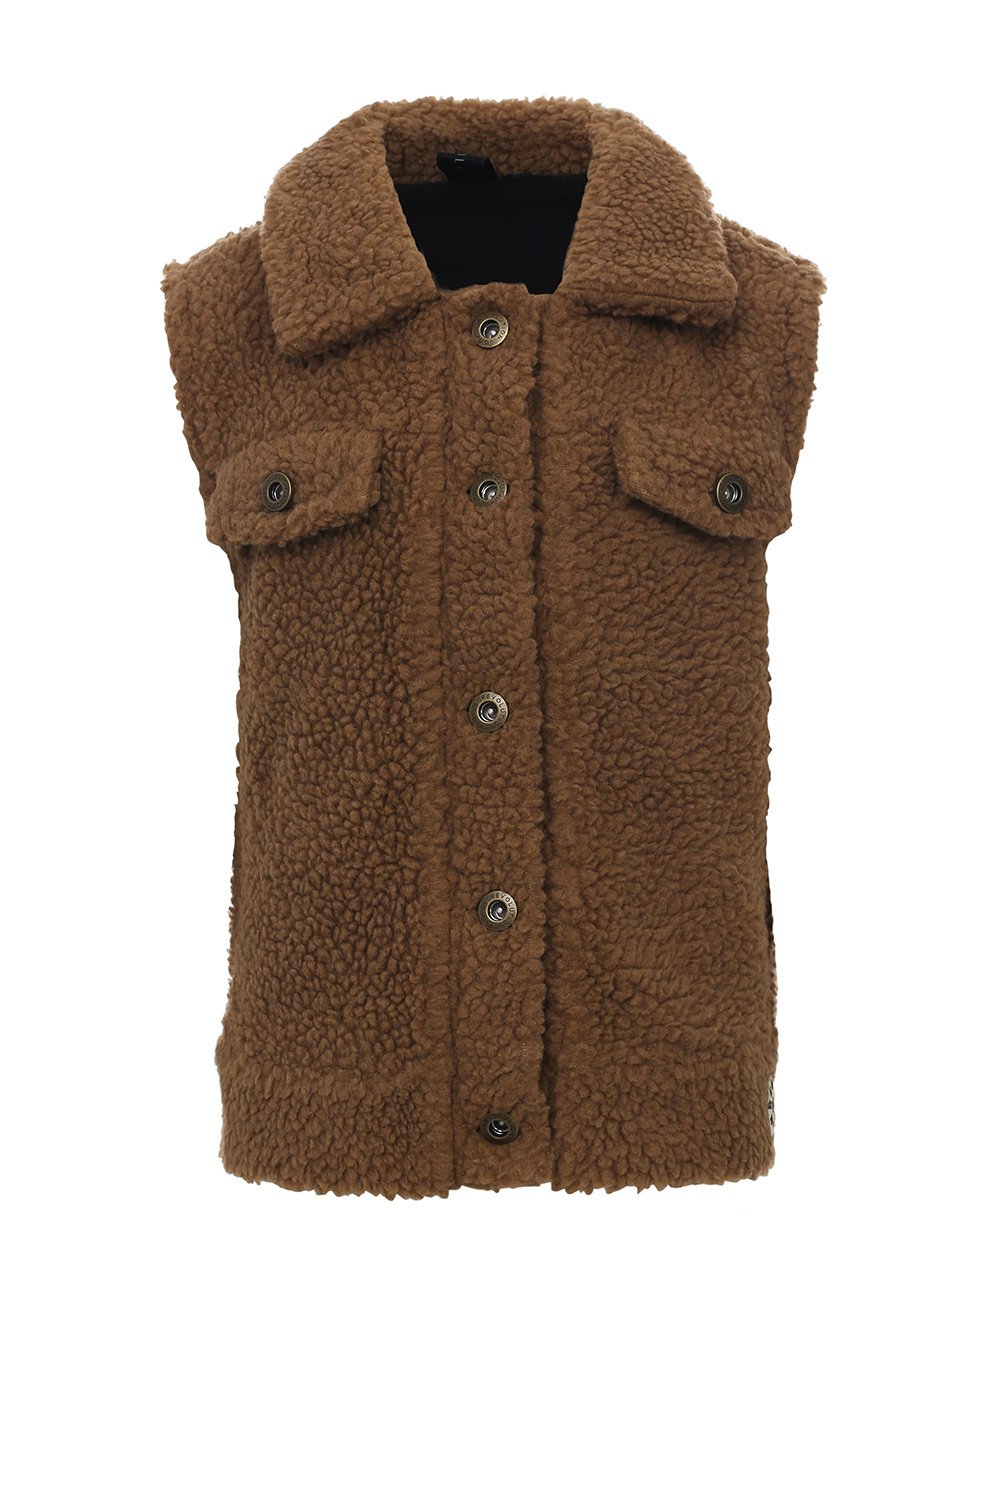 Looxs Revolution 2332-5061-731 Meisjes Sweater/Vest - Maat 152 - Teddy brown van Polyester